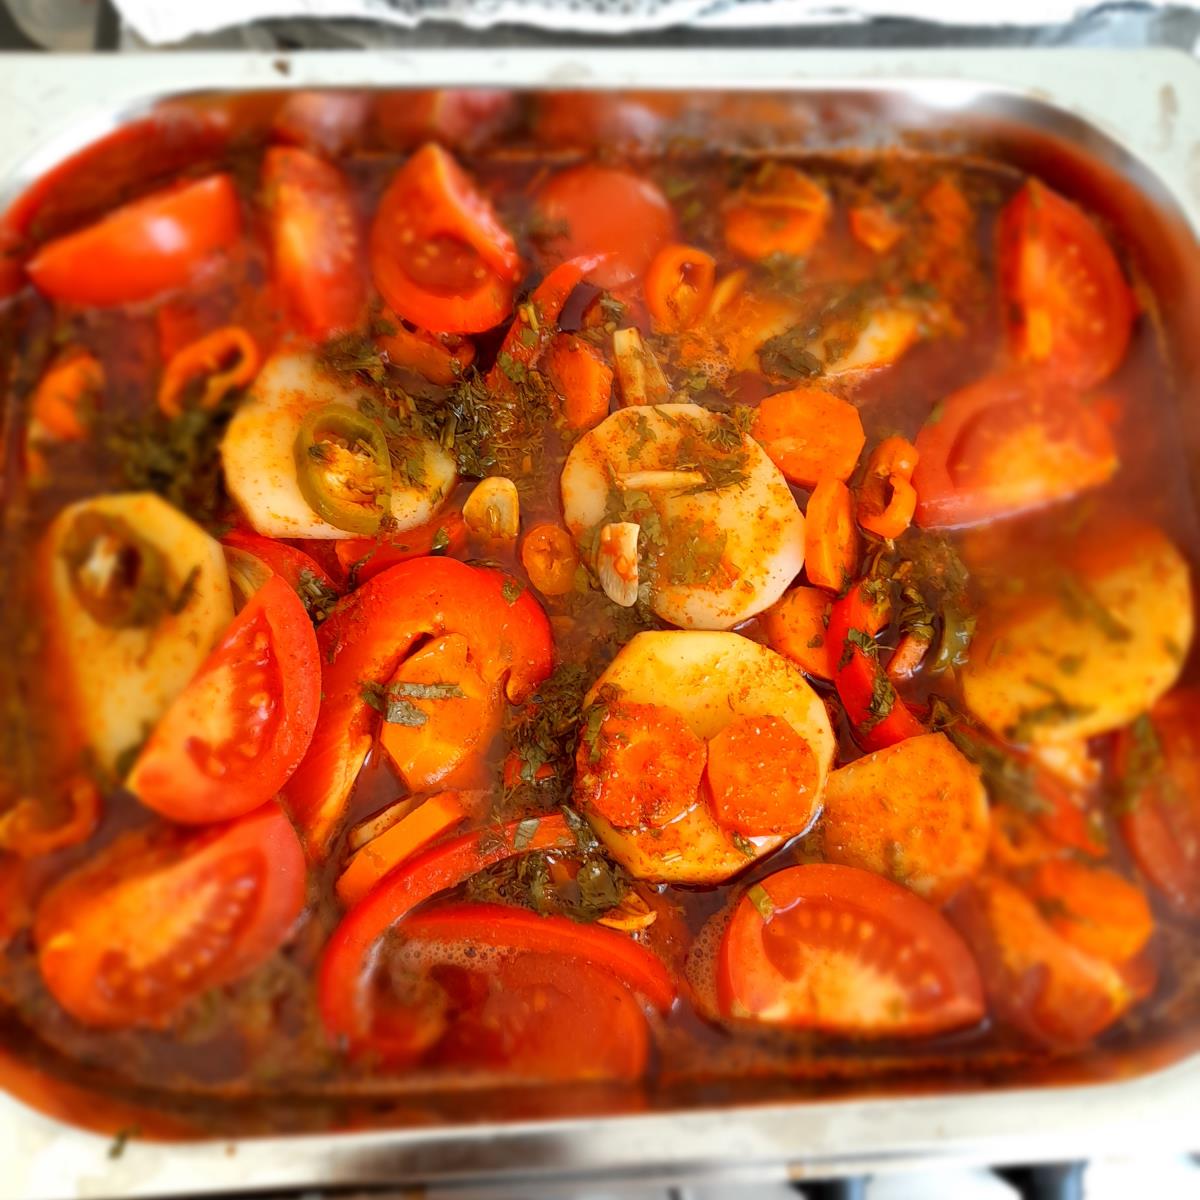 דגים בתנור בנוסח מרוקאי משודרג🤗😋